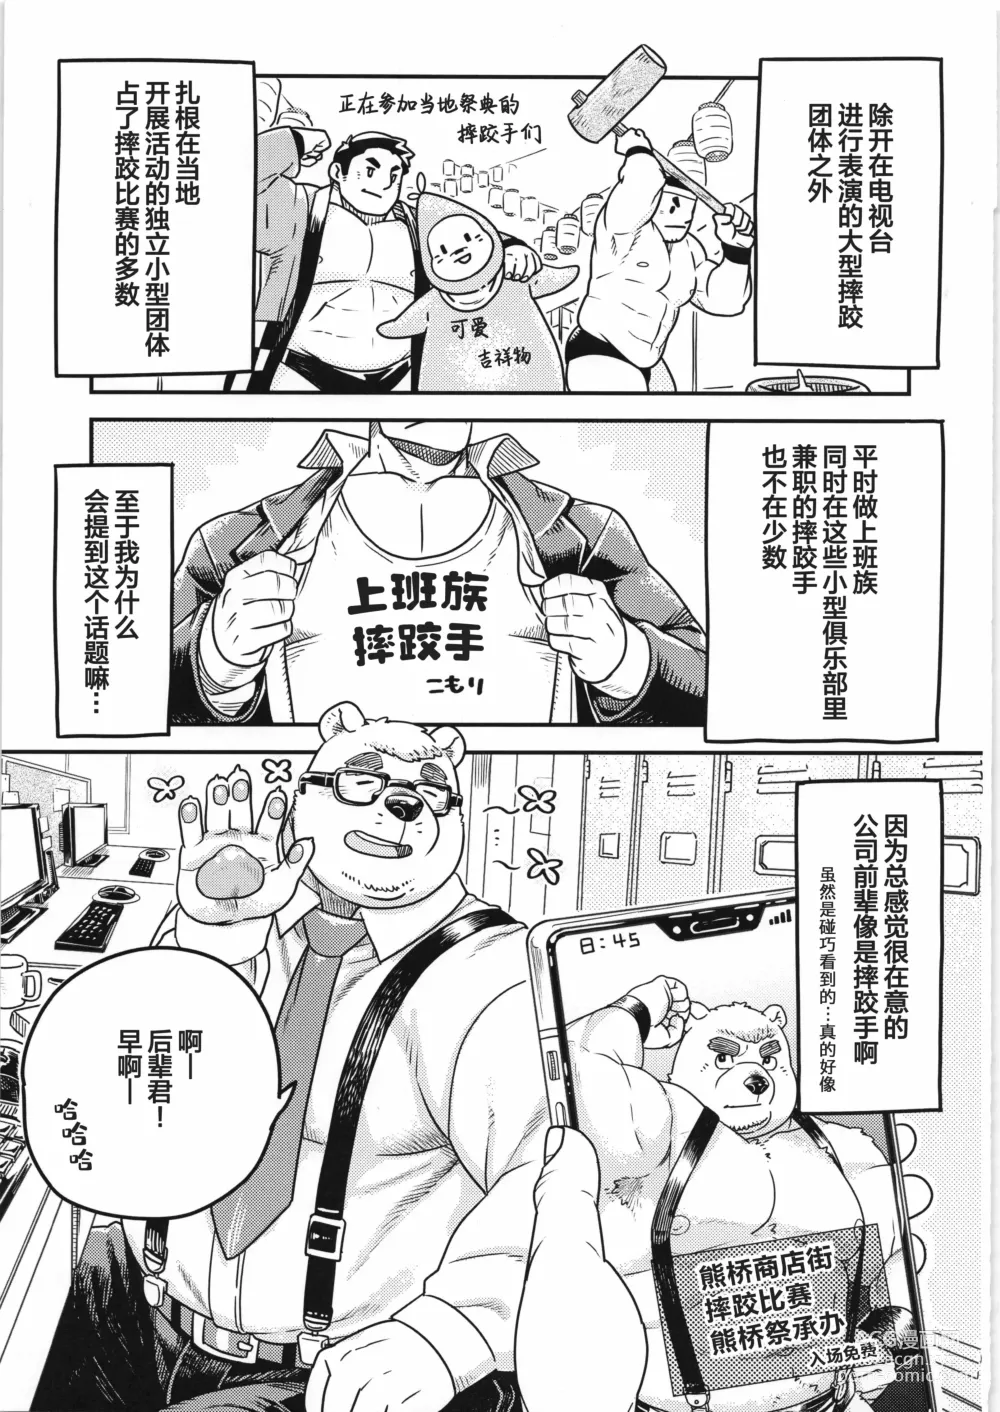 Page 8 of manga CHOGOKIN-004